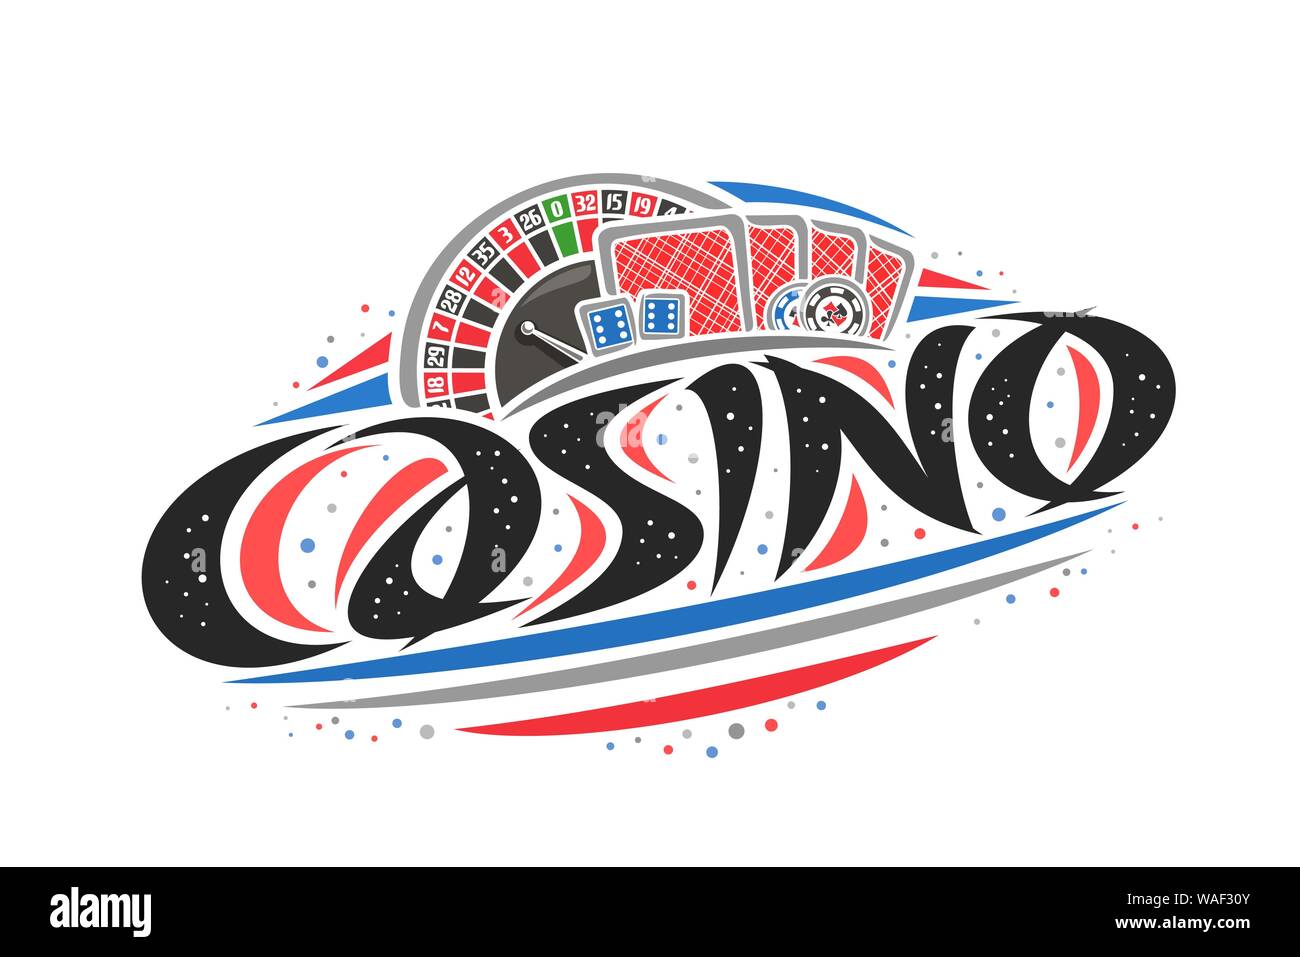 Vektor logo für Casino, kreative Grenzen Abbildung: Europäisches roulette Rad, original dekorative Pinsel Schriftzug für Word casino, vereinfachende abst Stock Vektor